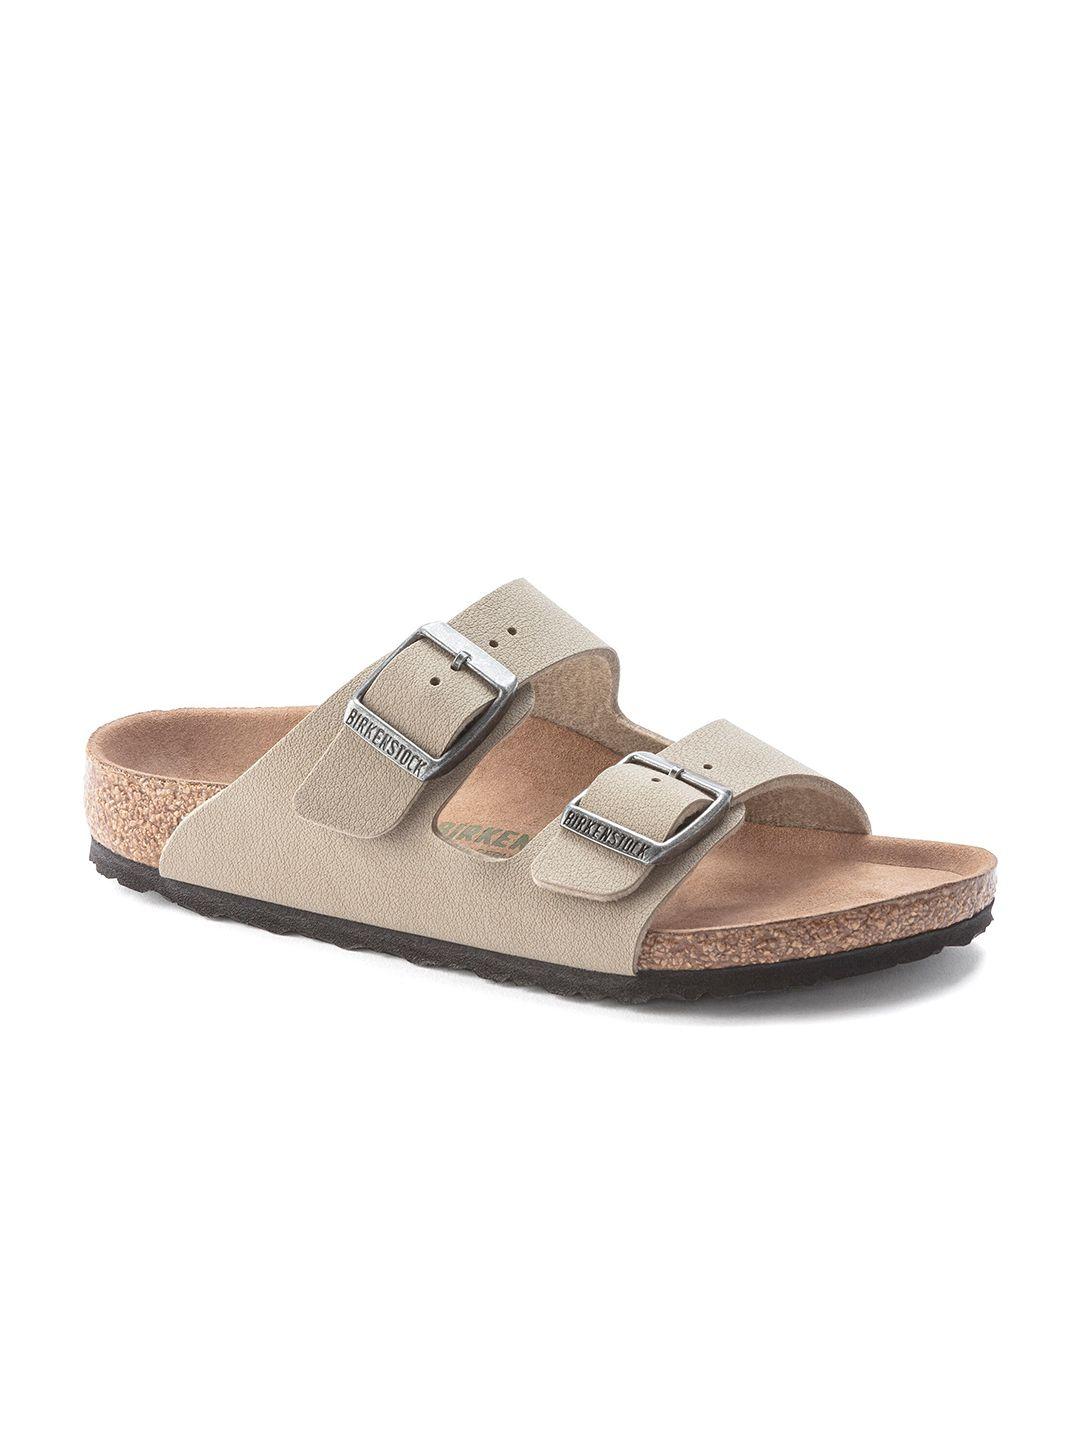 birkenstock boys beige & brown narrow width arizona comfort sandals